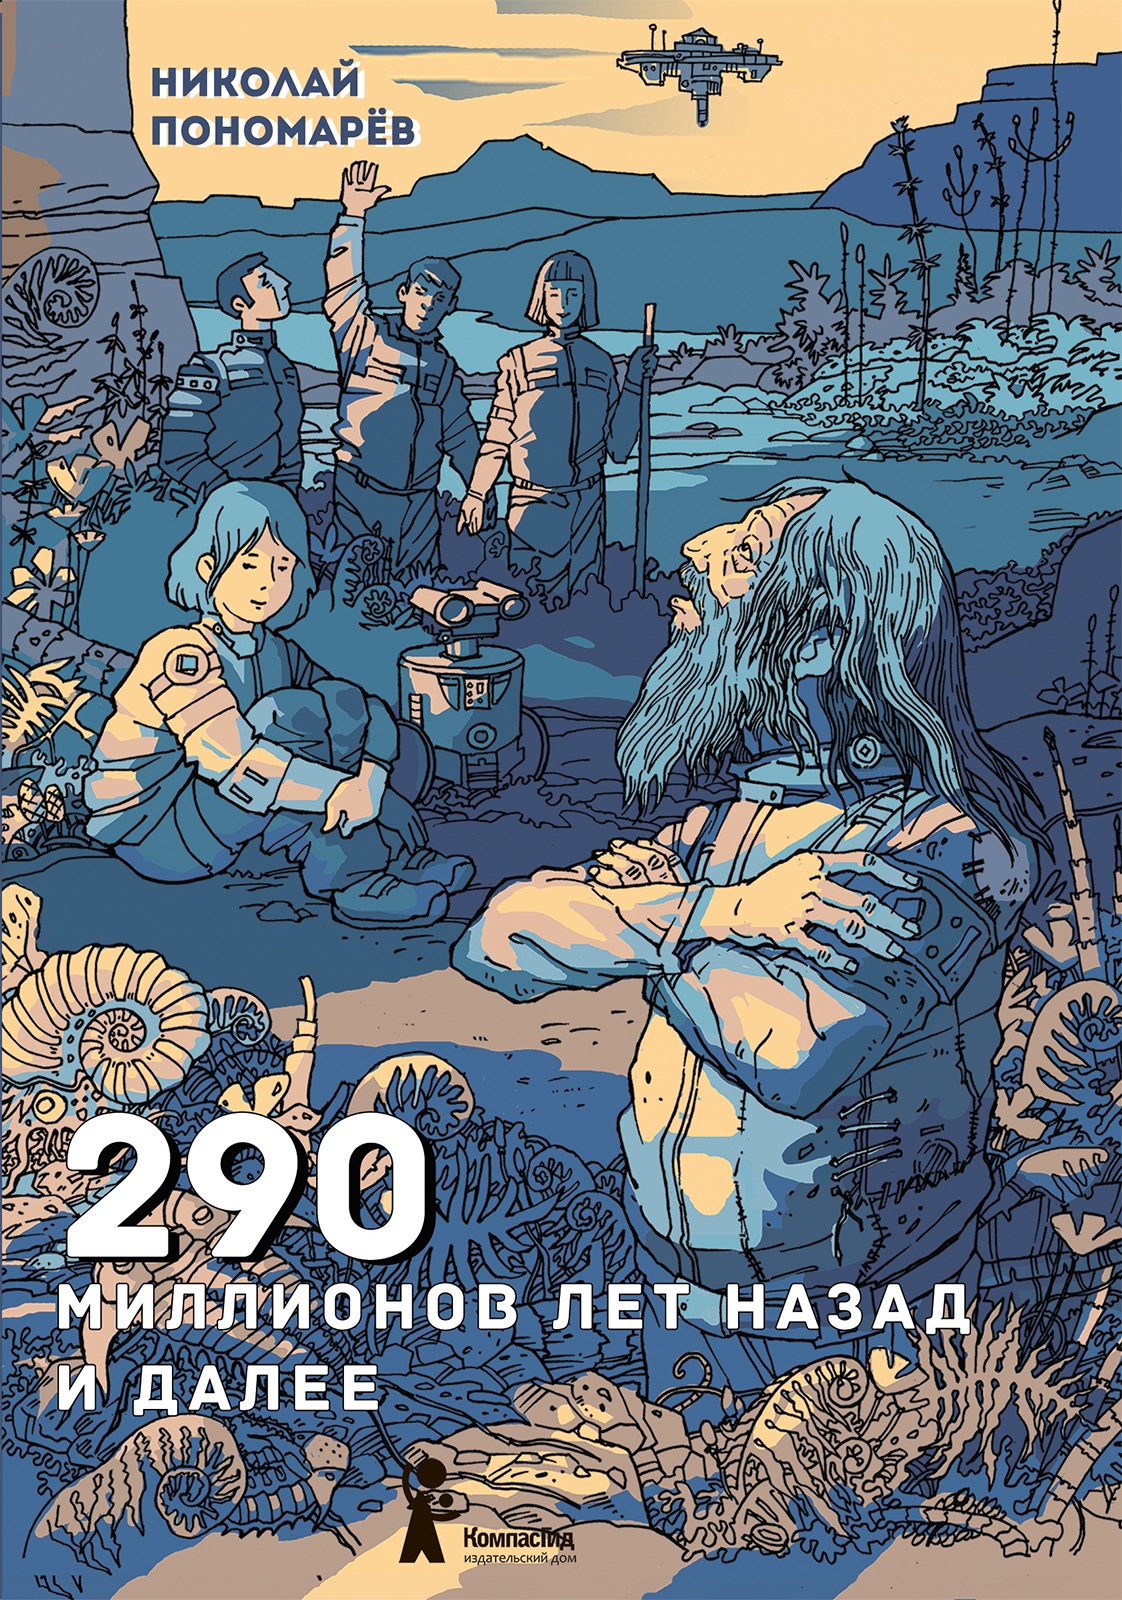 Пономарев Николай Анатольевич 290 миллионов лет назад и далее